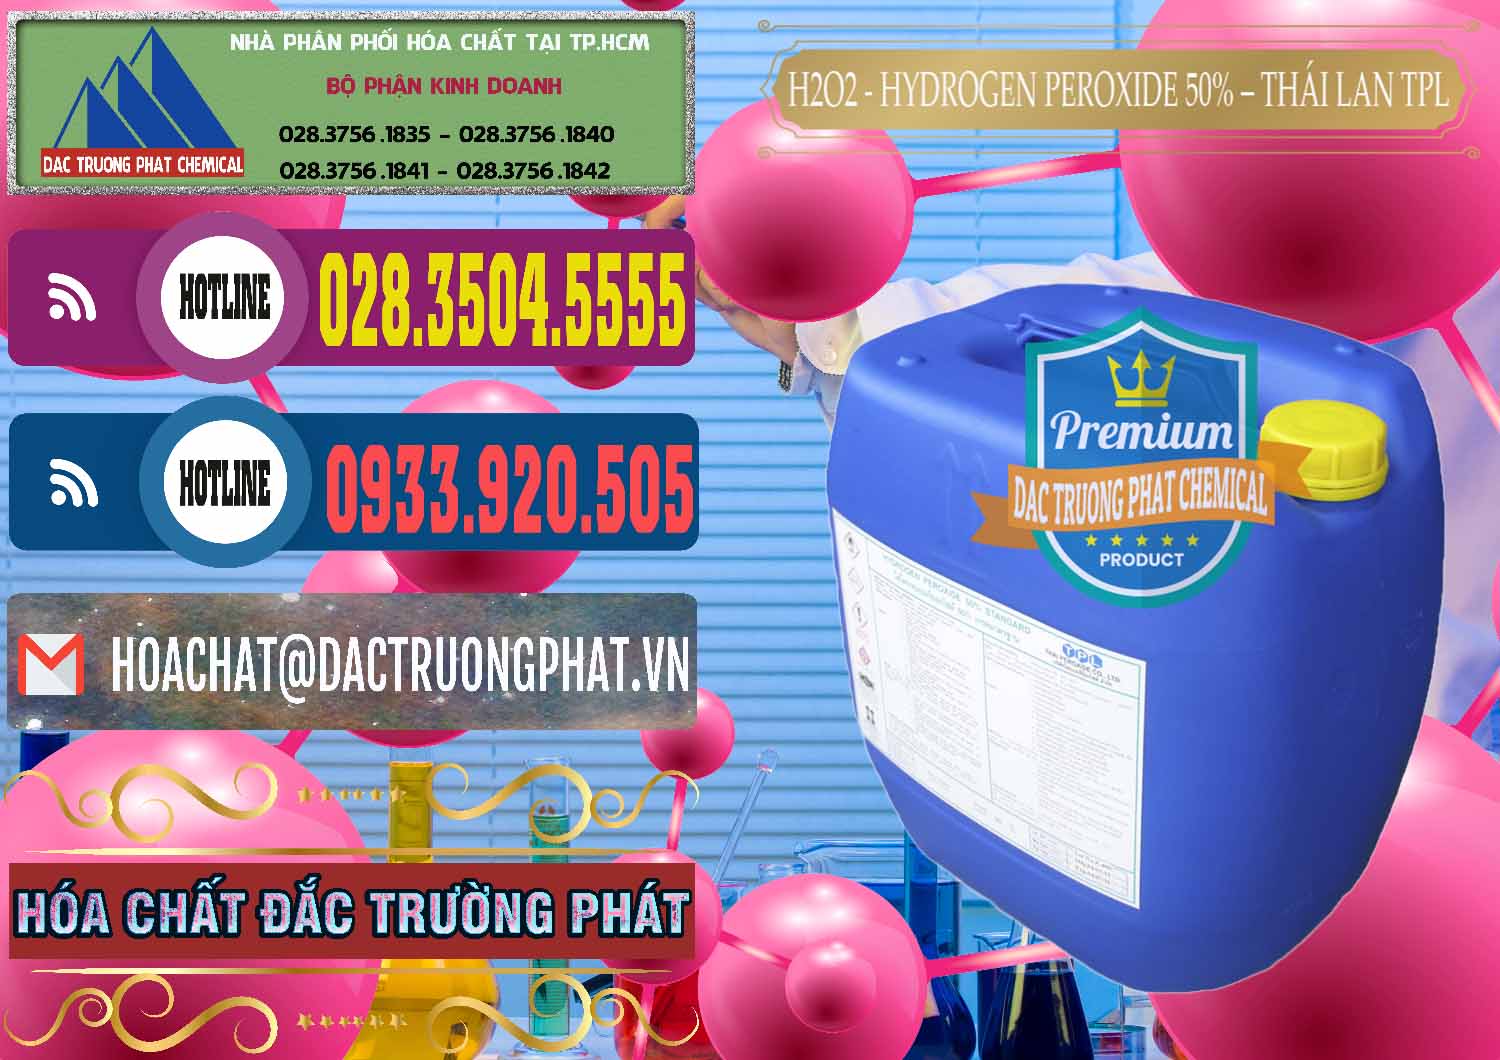 Đơn vị nhập khẩu & bán H2O2 - Hydrogen Peroxide 50% Thái Lan TPL - 0076 - Nơi cung cấp _ phân phối hóa chất tại TP.HCM - muabanhoachat.com.vn